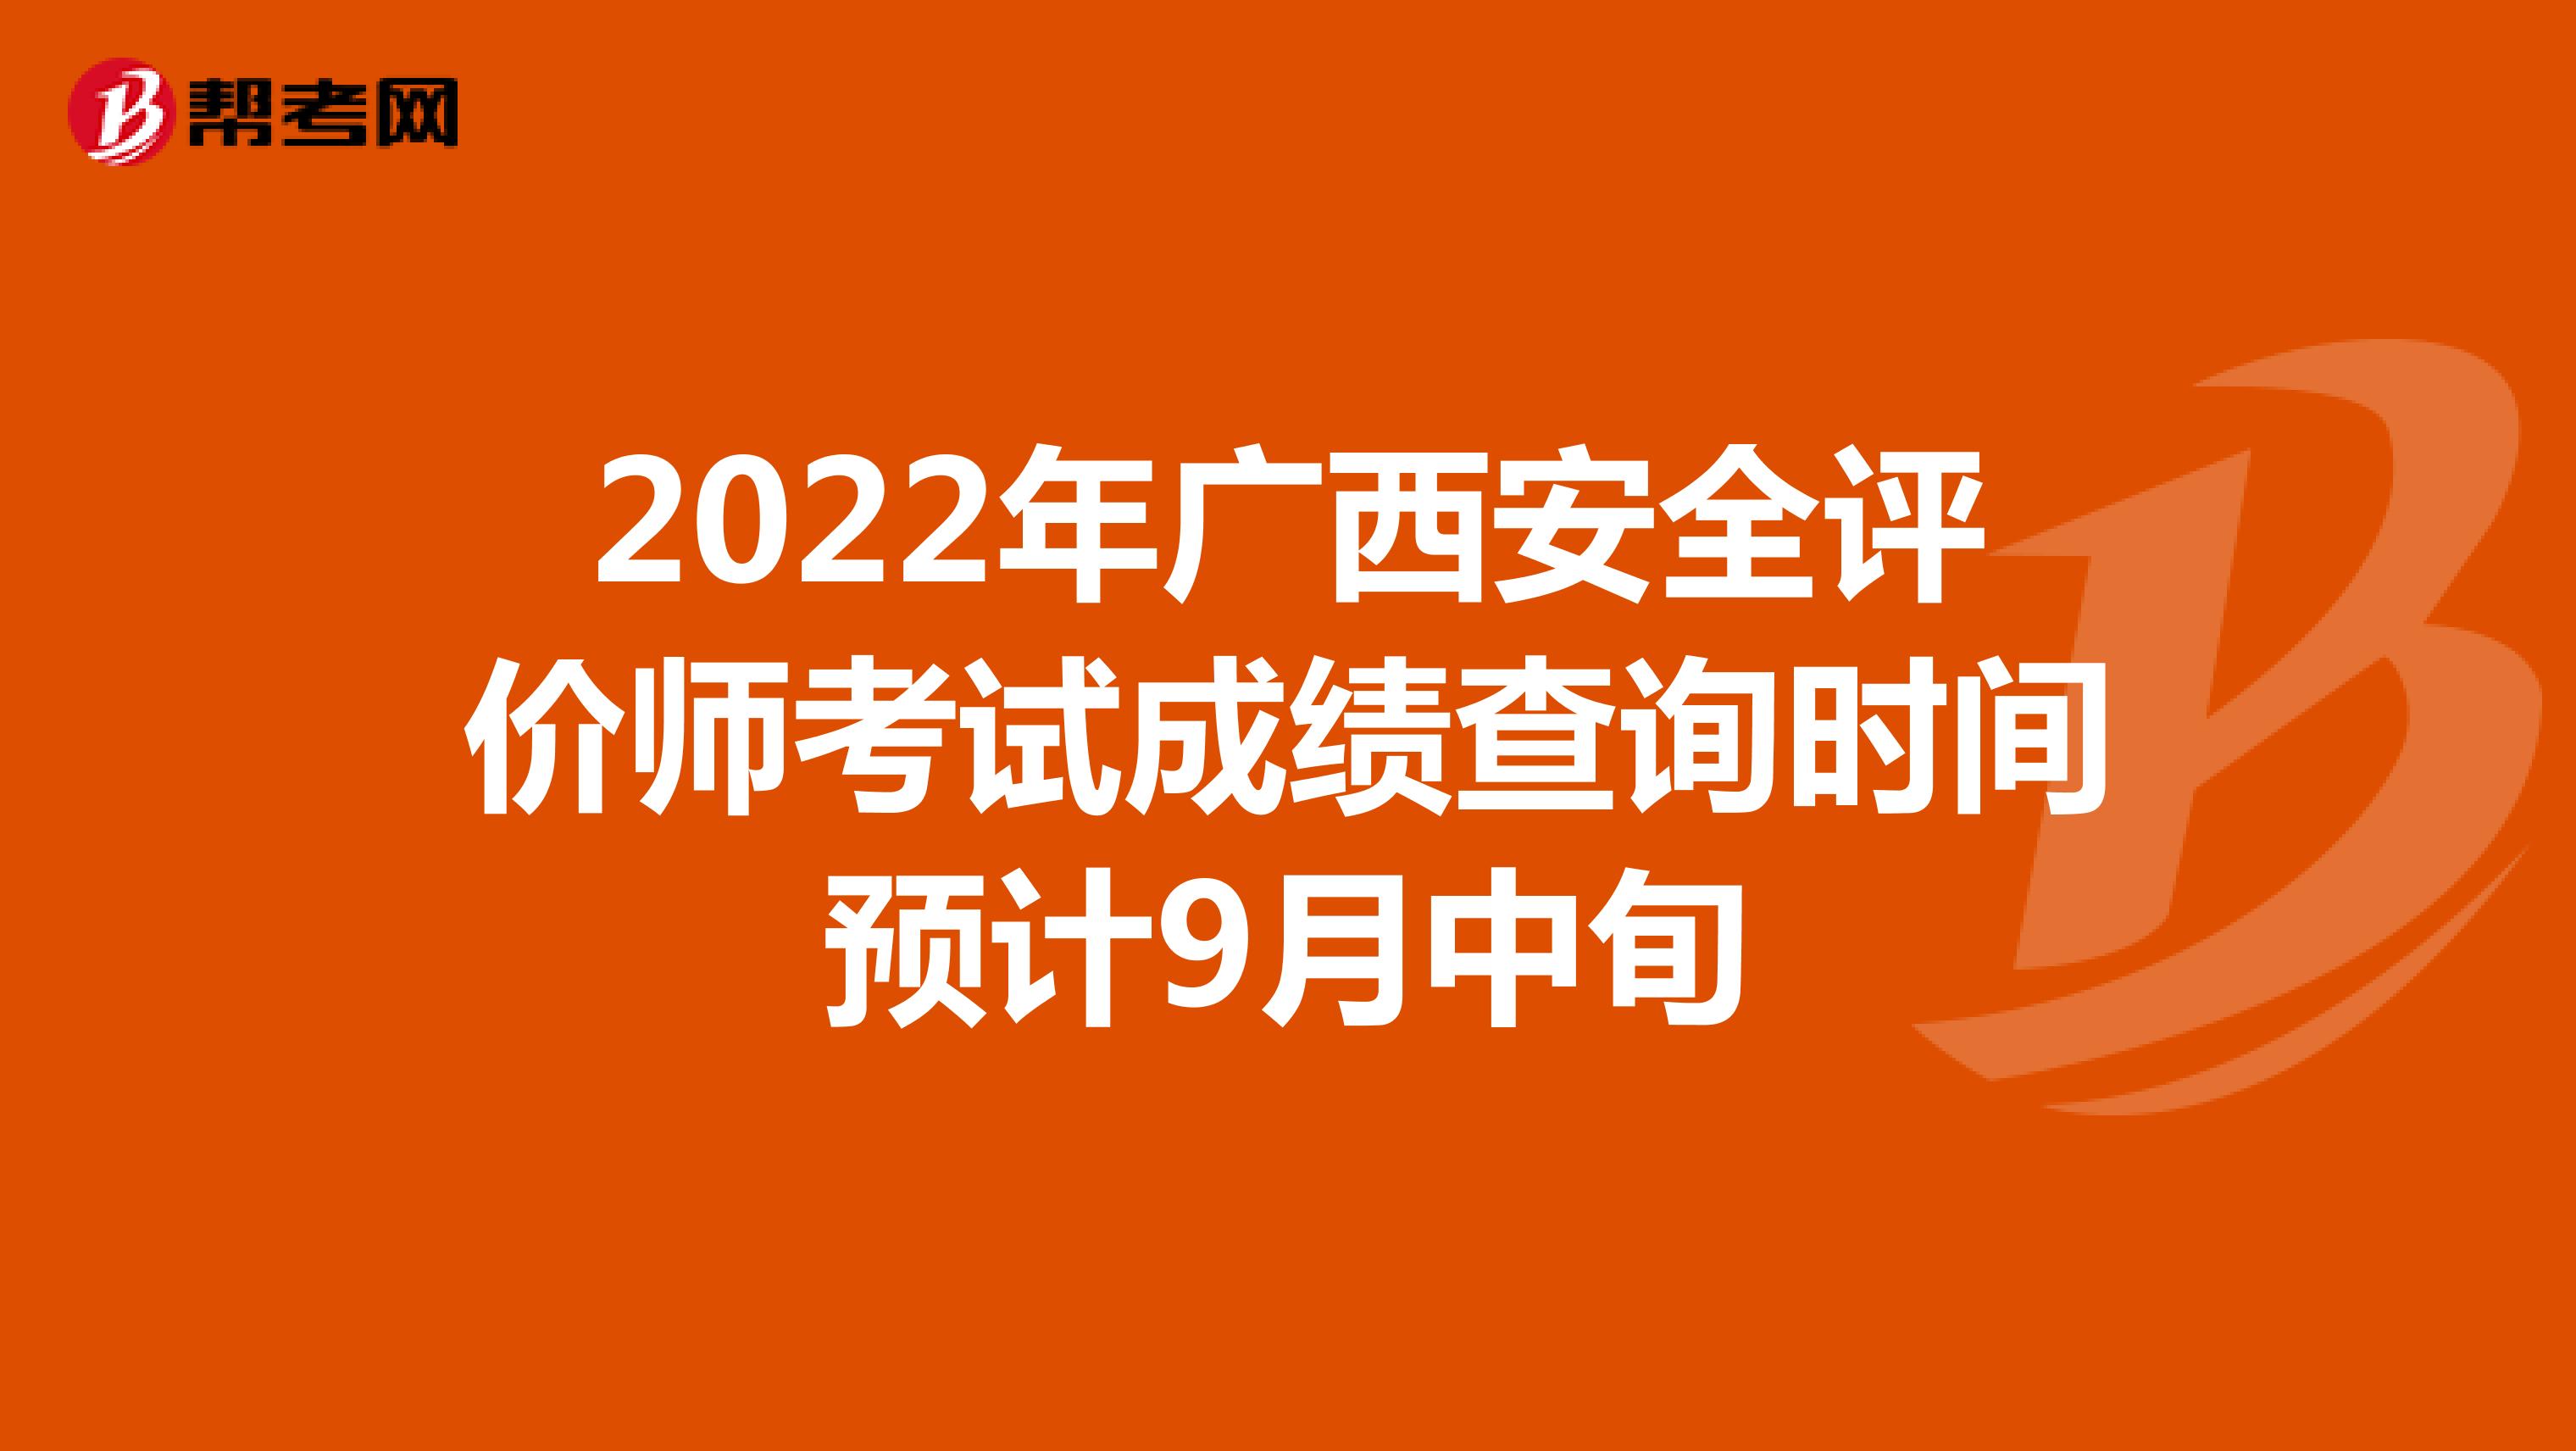 2022年广西安全评价师考试成绩查询时间预计9月中旬